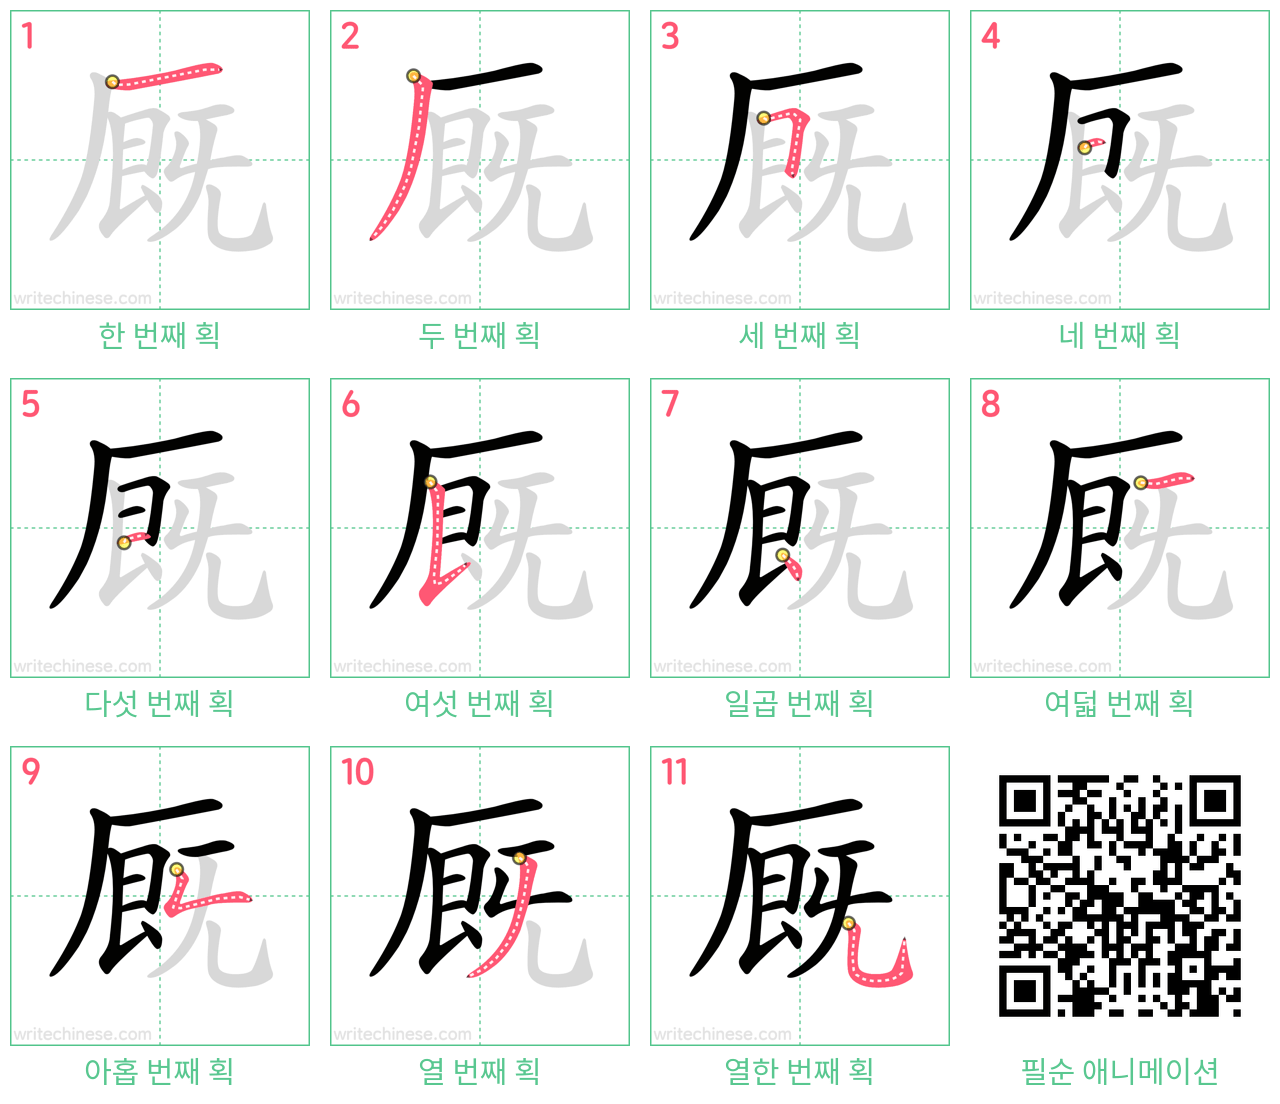 厩 step-by-step stroke order diagrams